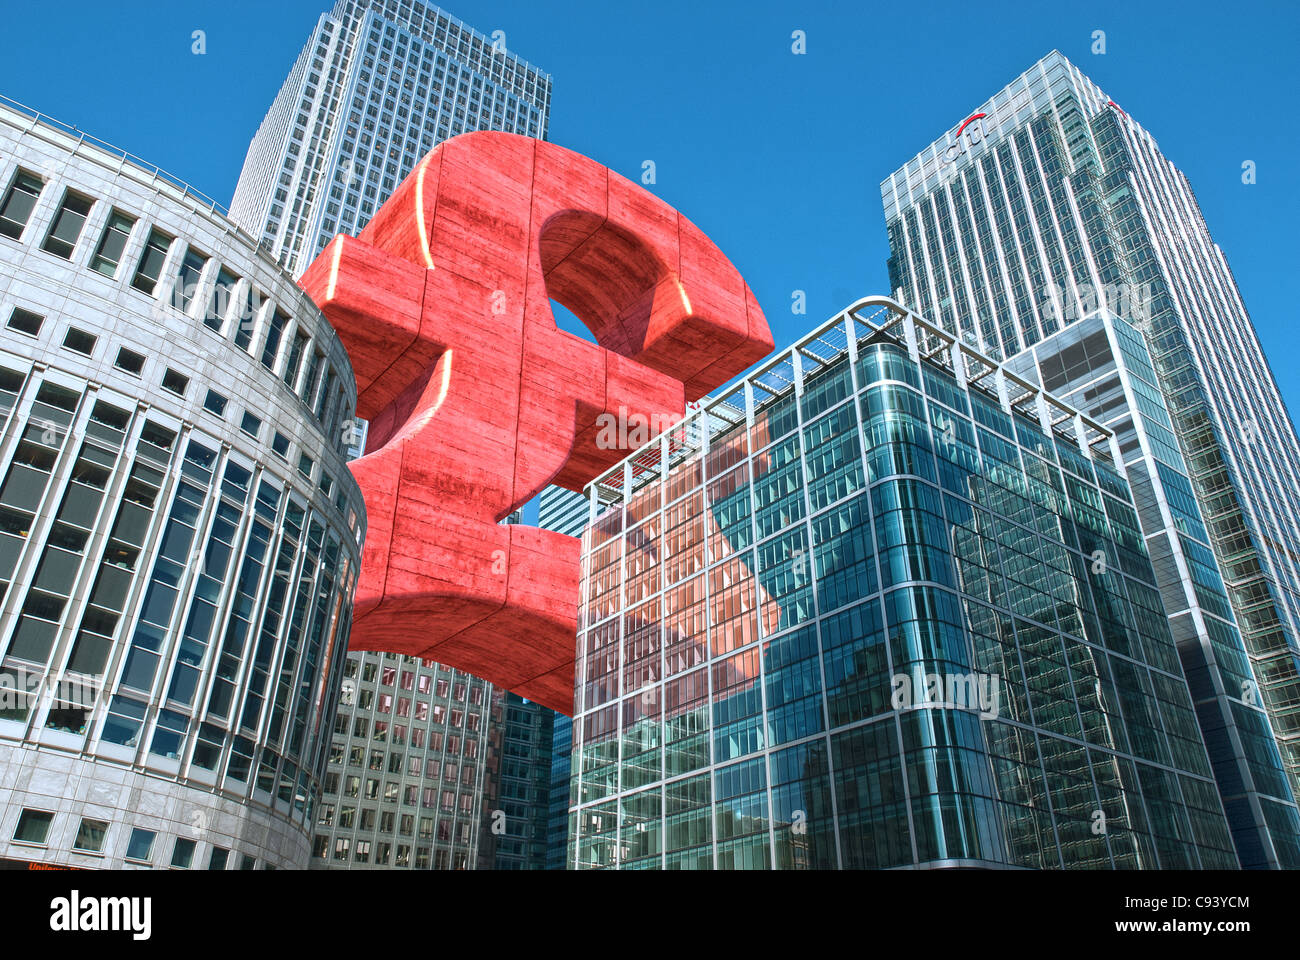 Digital bearbeiteten Foto von Hitandrun Medien. Ein riesiges Pfund Sterling Symbol, schwebend zwischen Gebäuden in Canary Wharf, Lond Stockfoto